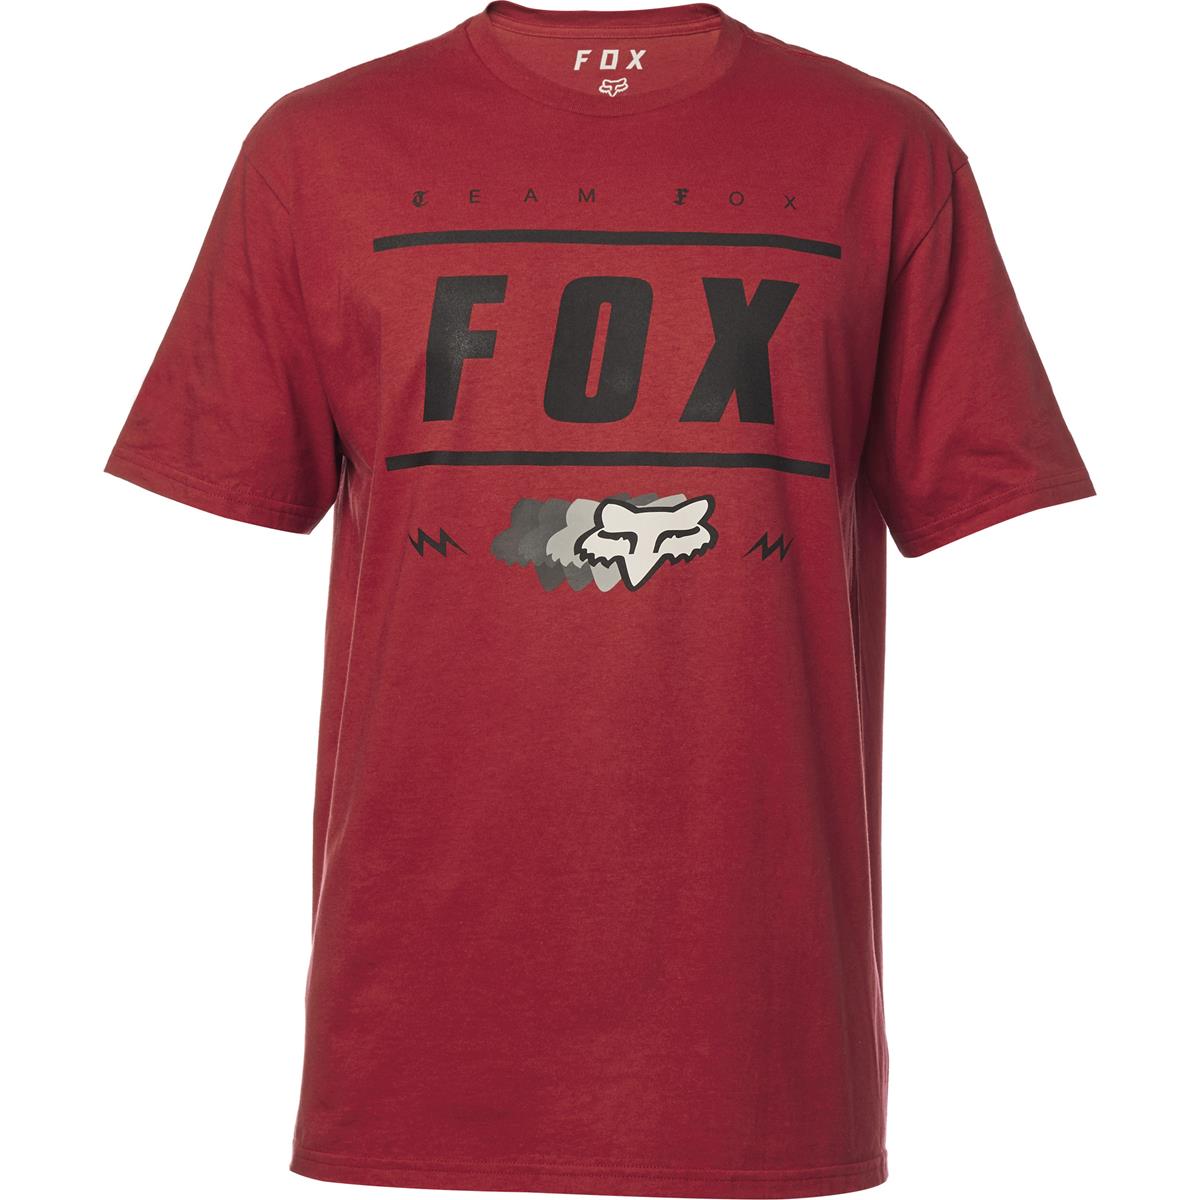 Fox T-Shirt Tech Team 74 Heather Red